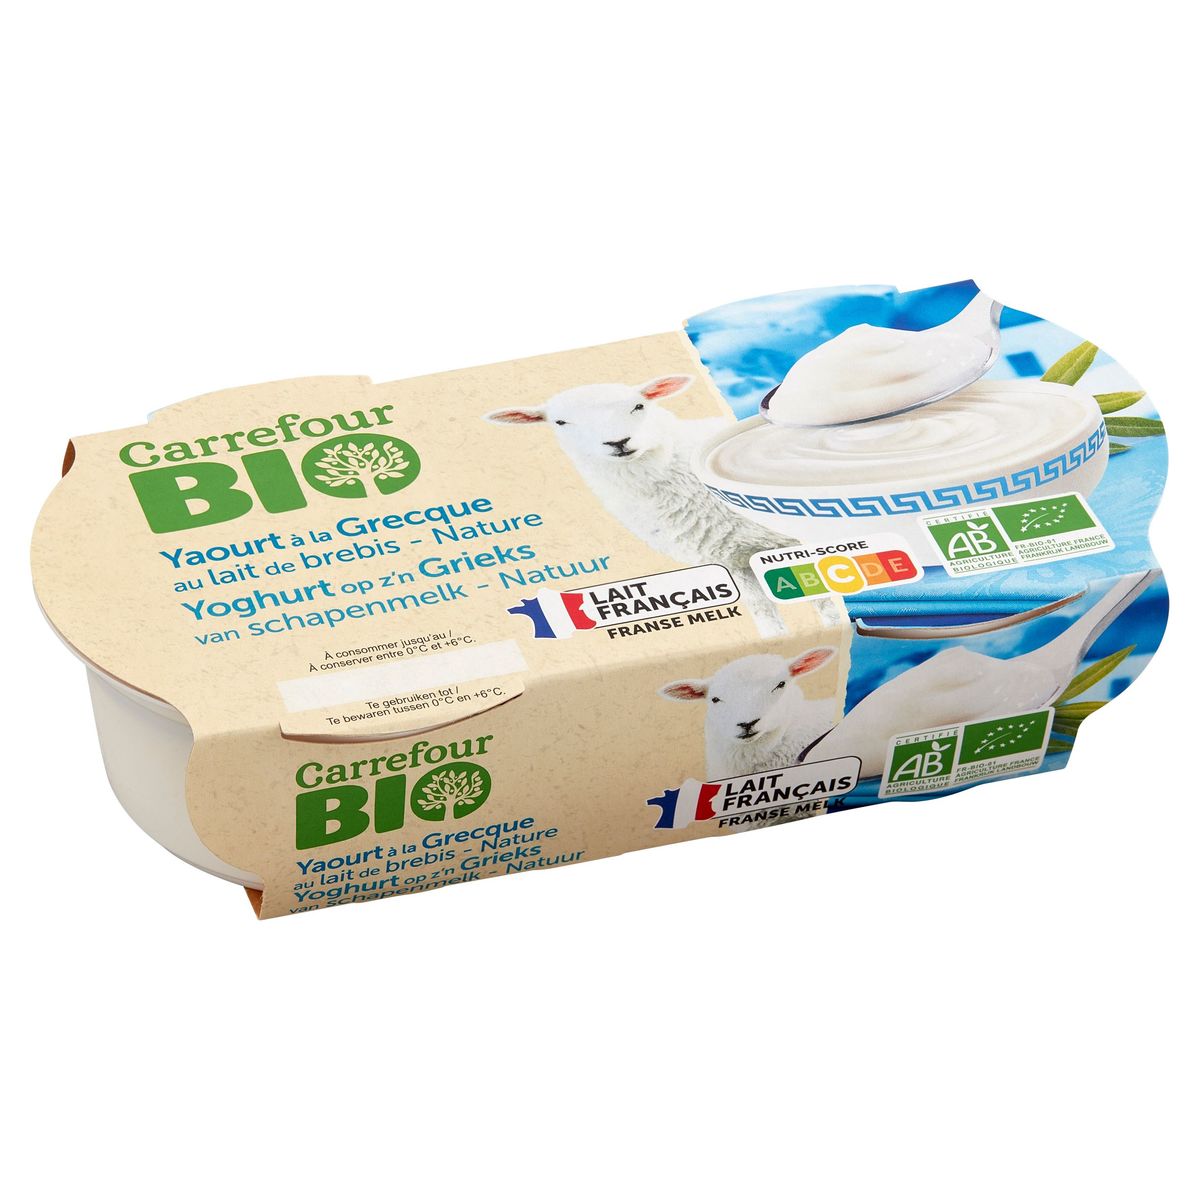 Carrefour Bio Yoghurt op z'n Grieks van Schapenmelk - Natur 300 g (2x150 g)